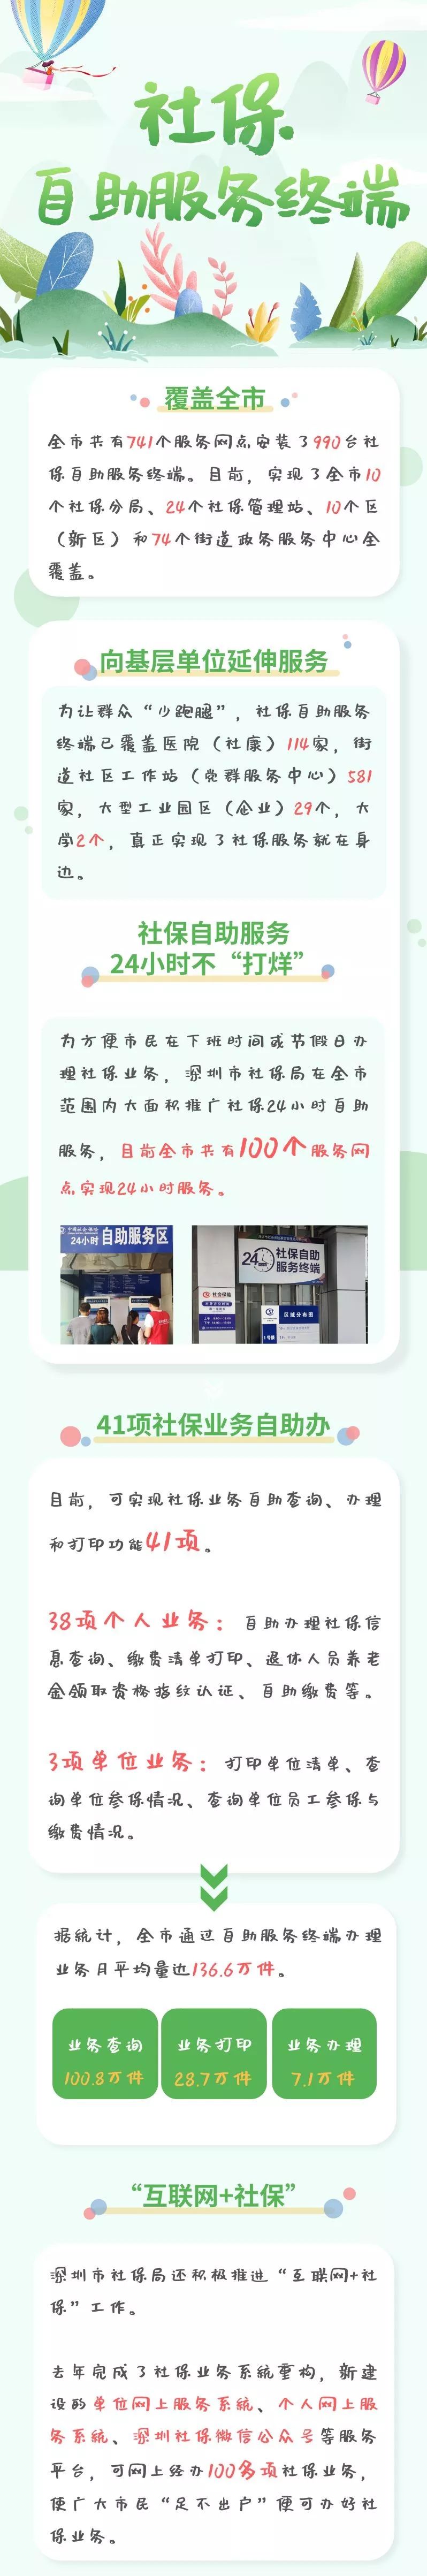 深圳光明区社保自助终端24小时服务网点